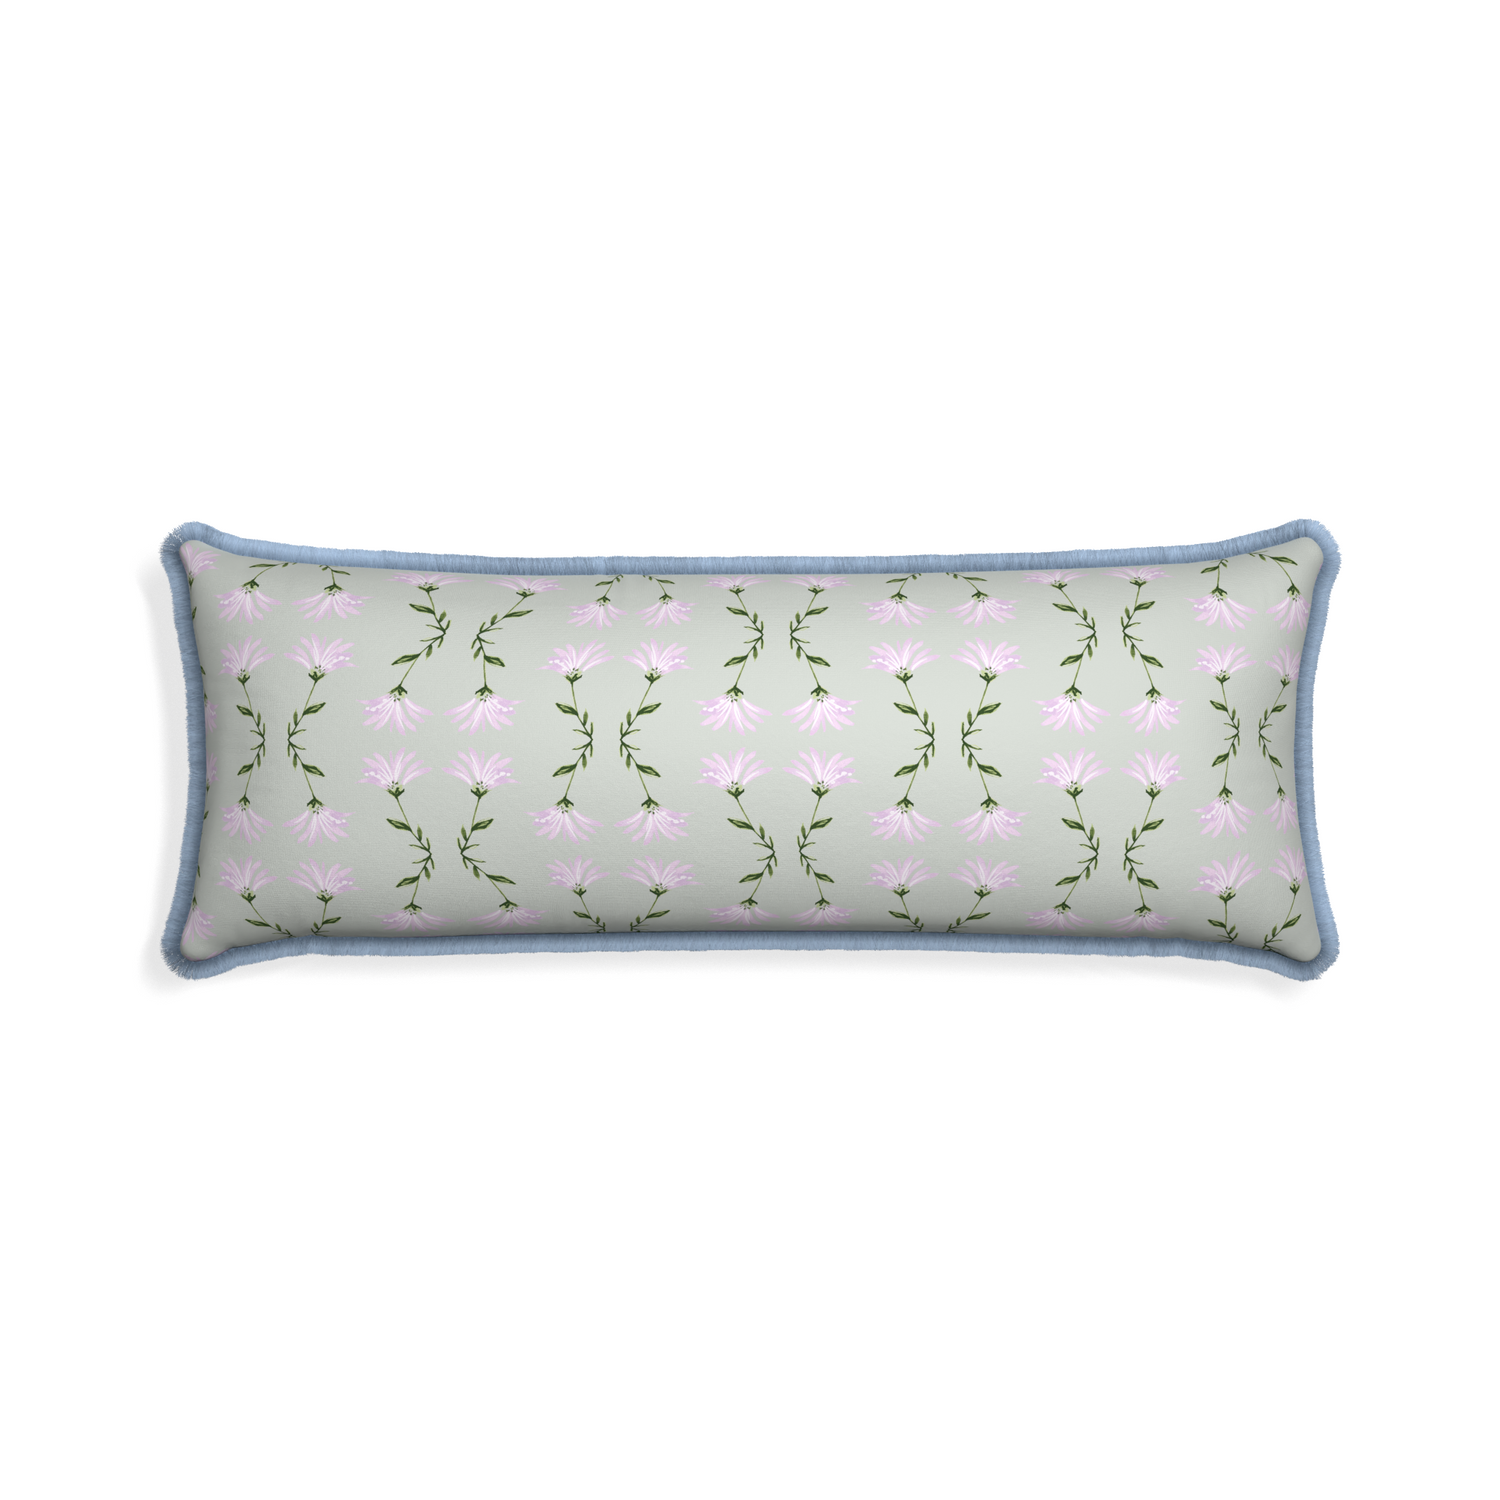 Xl-lumbar marina sage custom pillow with sky fringe on white background